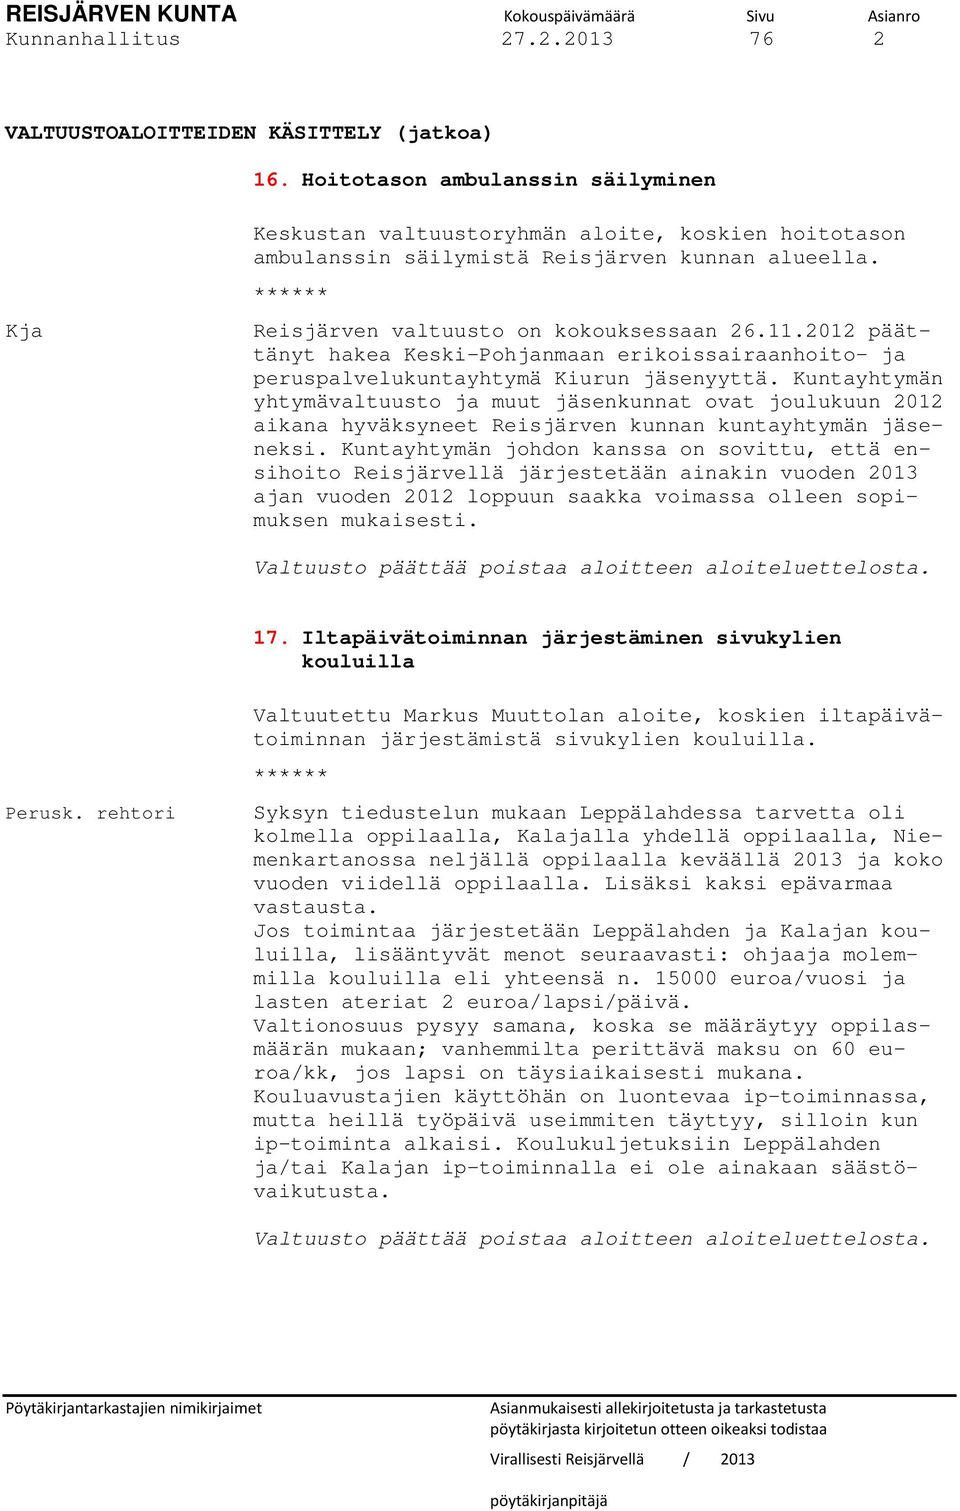 2012 päättänyt hakea Keski-Pohjanmaan erikoissairaanhoito- ja peruspalvelukuntayhtymä Kiurun jäsenyyttä.